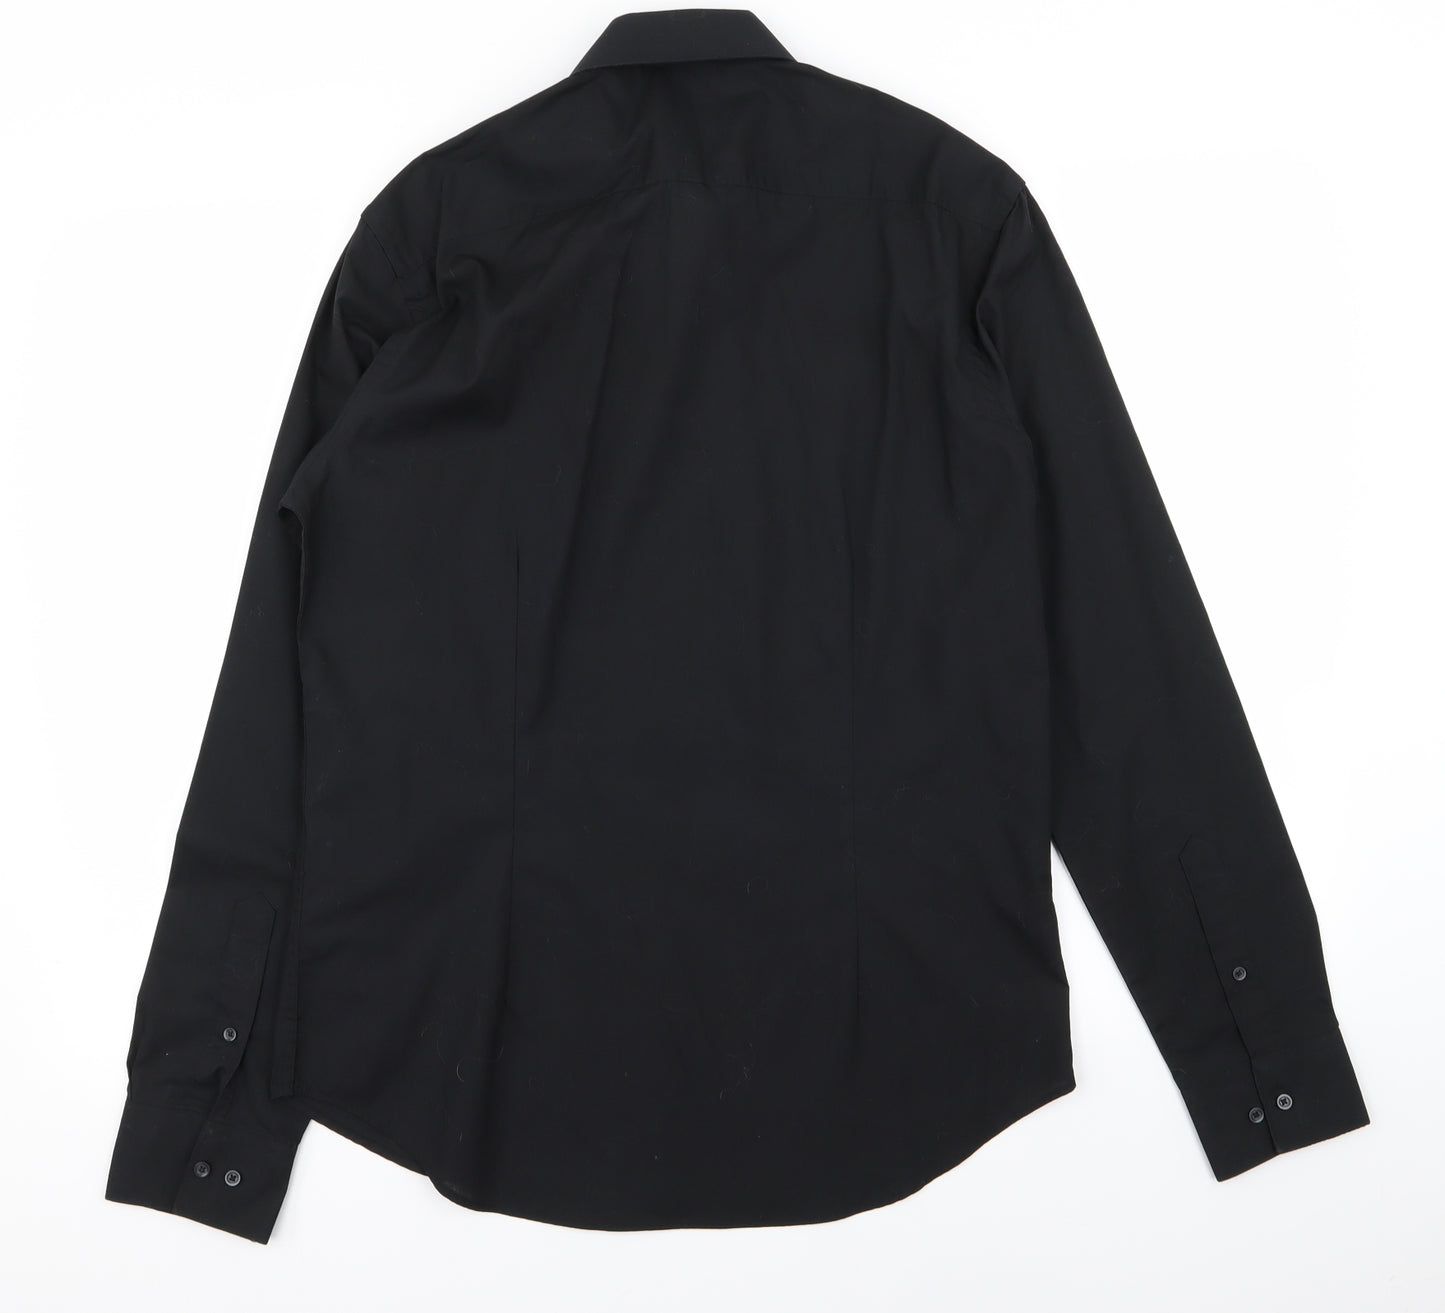 Taylor & Cutter Mens Black    Dress Shirt Size 15.5